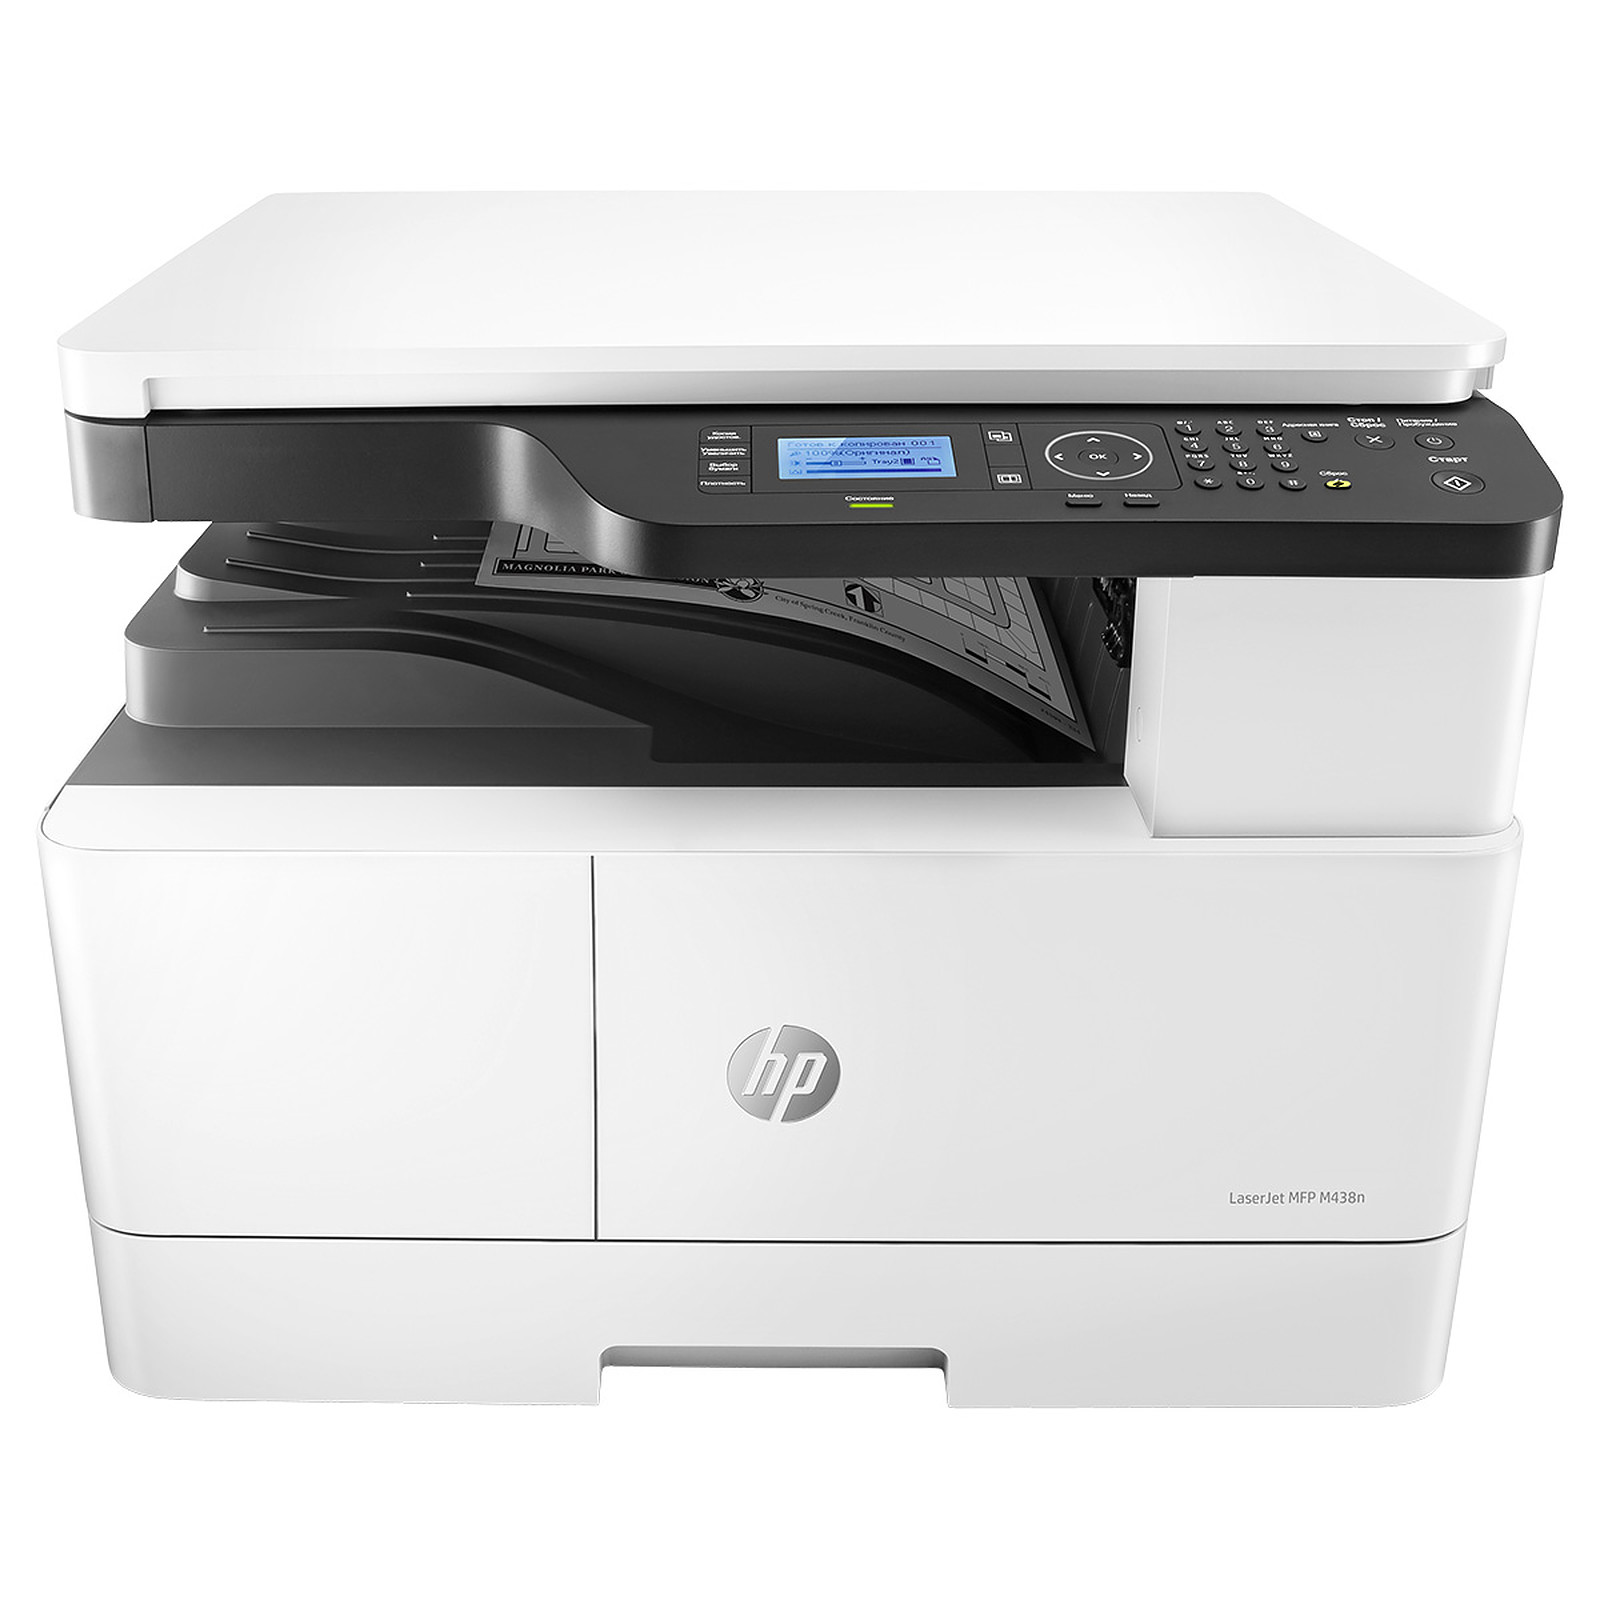 
HP LaserJet A3 MFP M438n 22PPM, Print, Scan - A3, Copy, Fax, USB 2.0 + 10/100/1000 LAN INTERFACE ( TONER - W1335A)